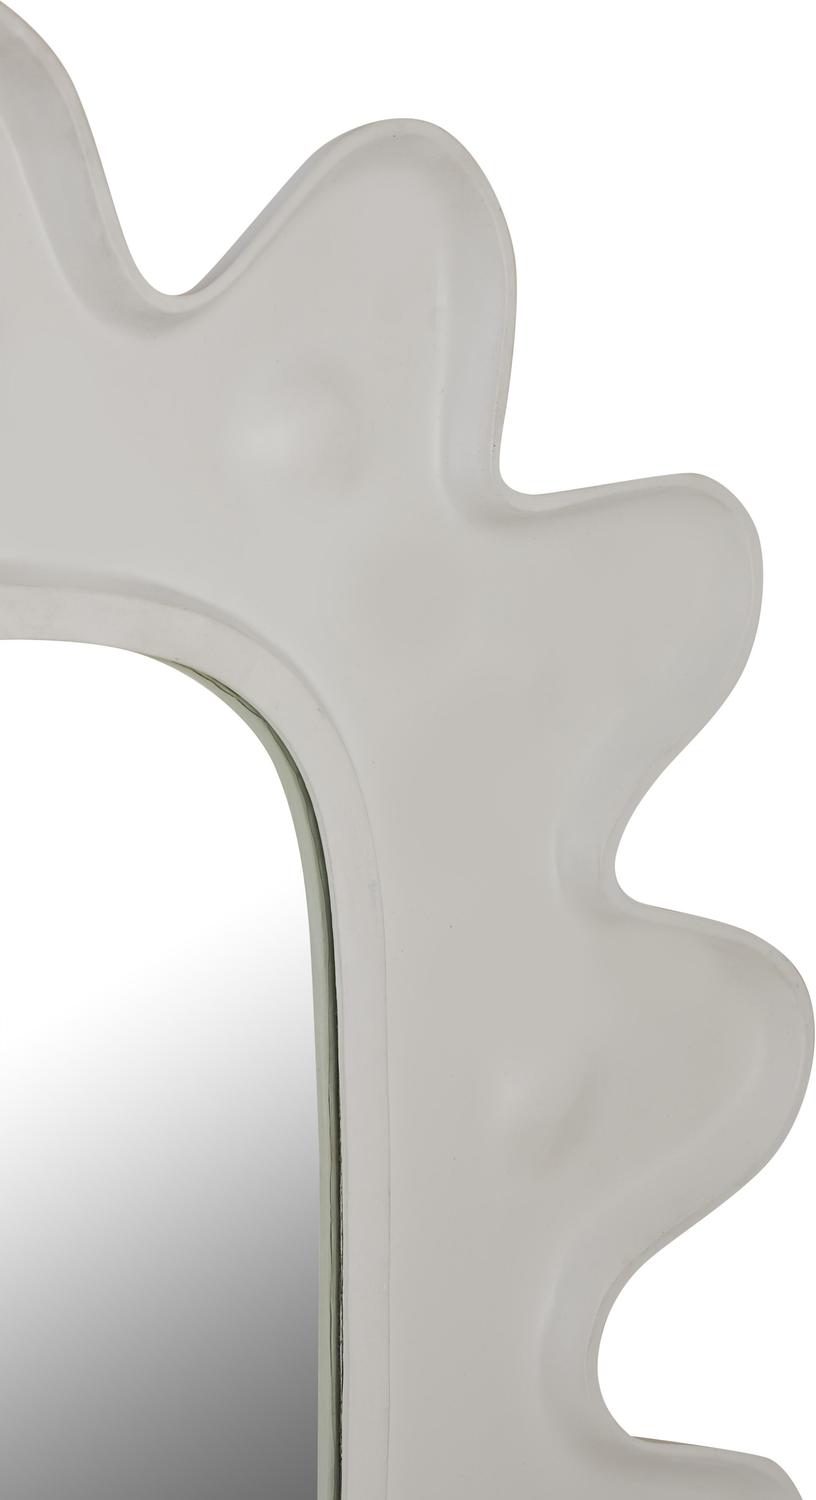 victorian mirror oval Contemporary Design Furniture Mirrors White